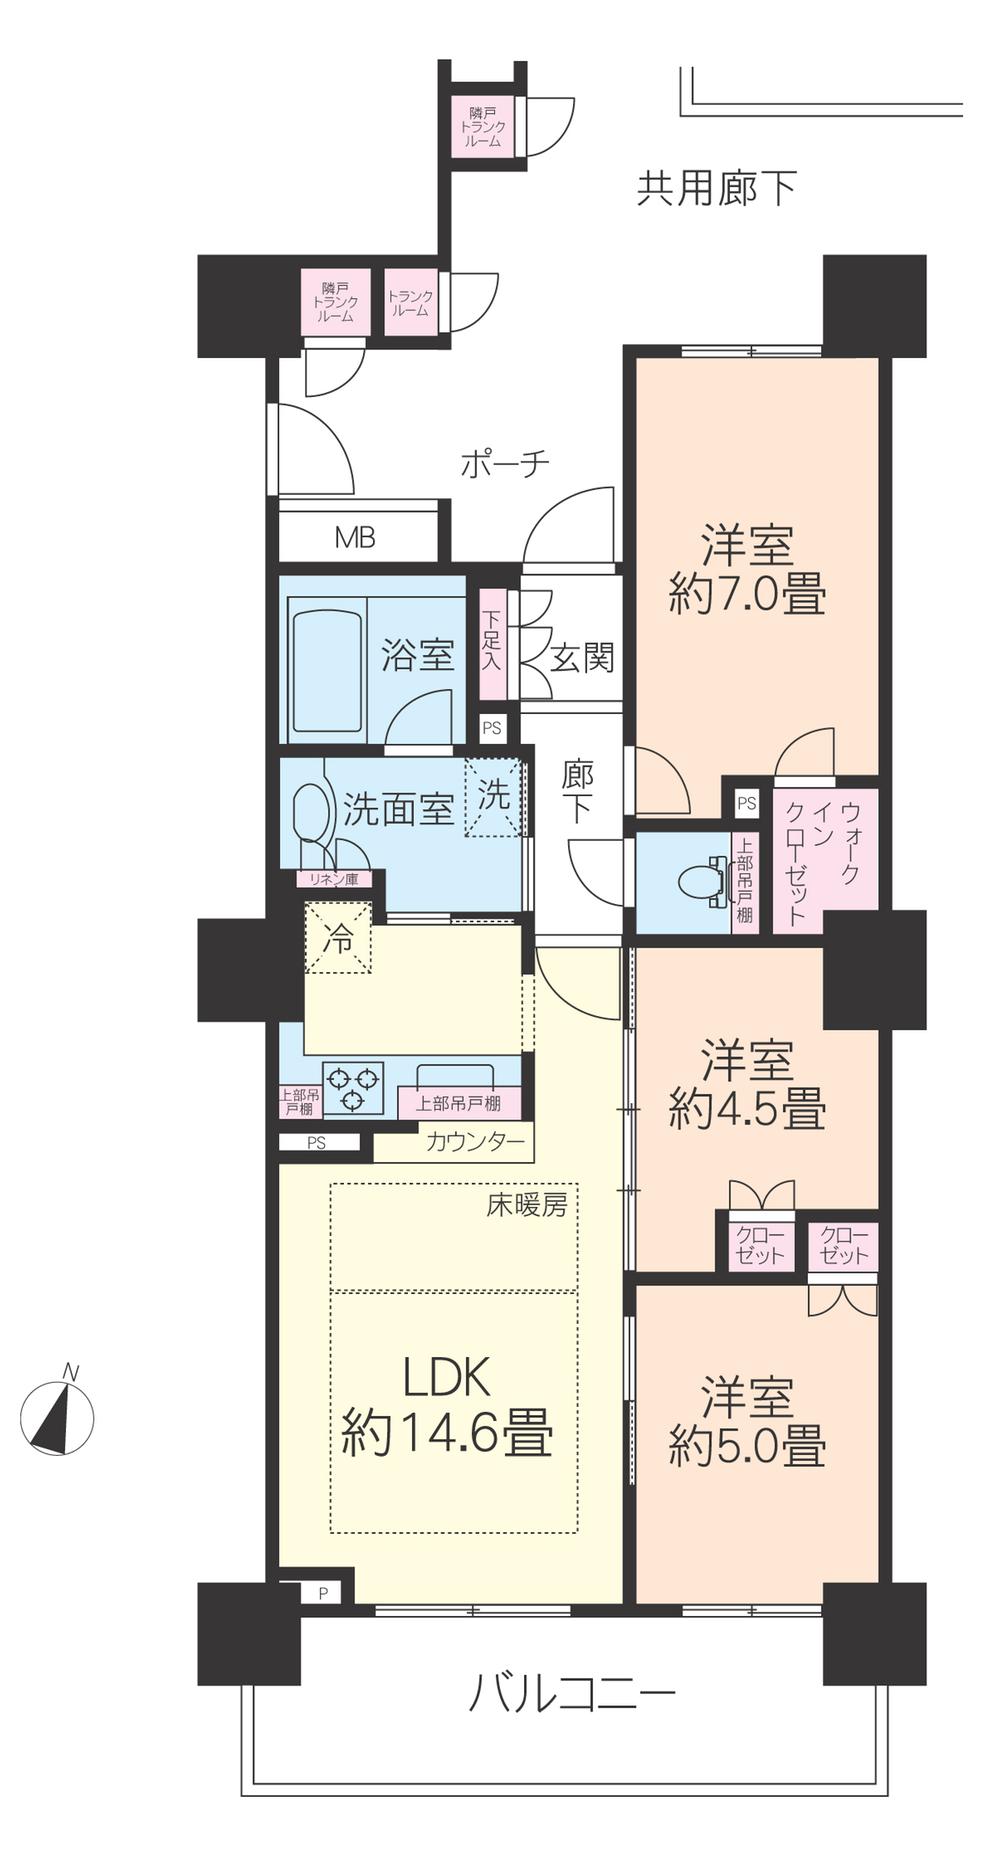 Floor plan. 3LDK, Price 47,800,000 yen, Occupied area 67.69 sq m , Balcony area 11.42 sq m 3LDK + W + trunk room